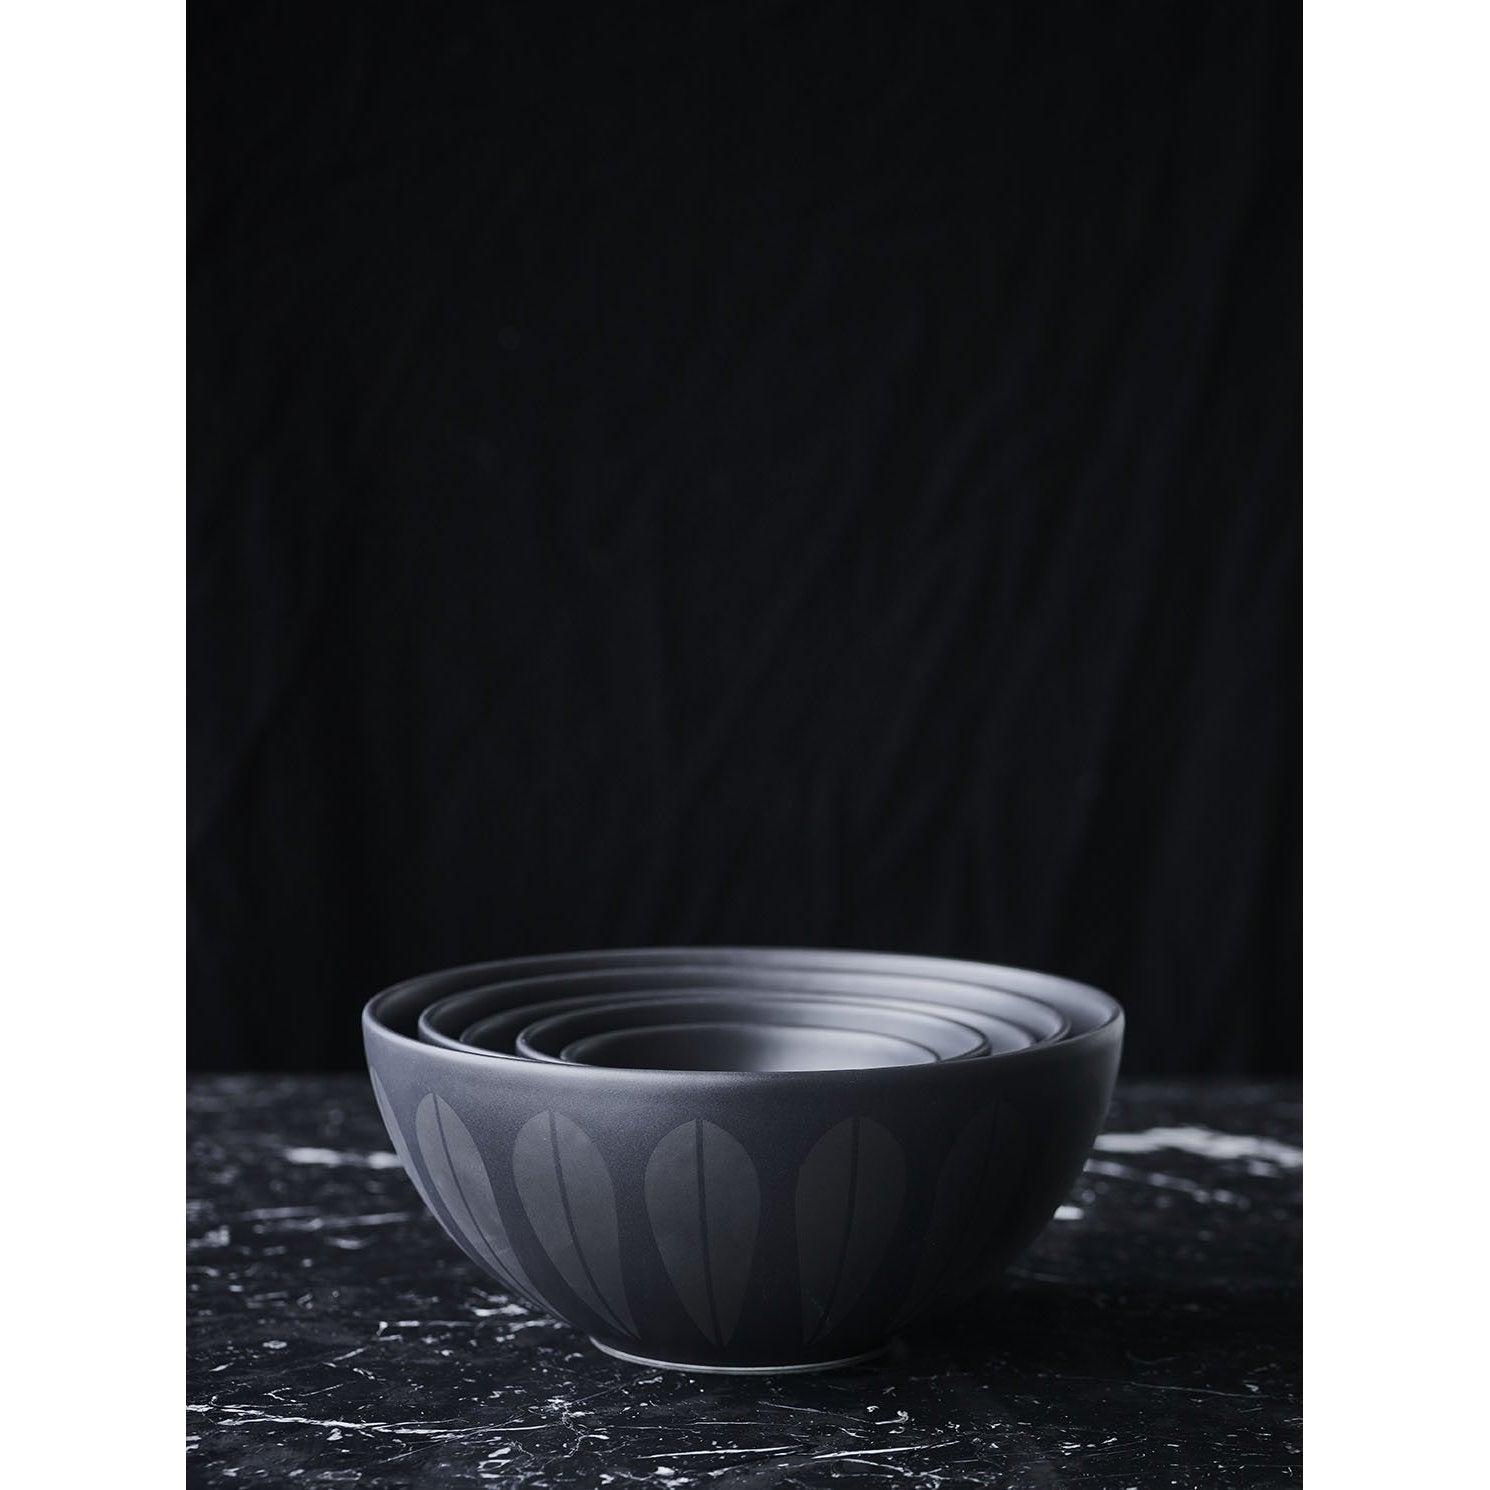 Lucie Kaas Arne Clausen Bowl noir, 18 cm